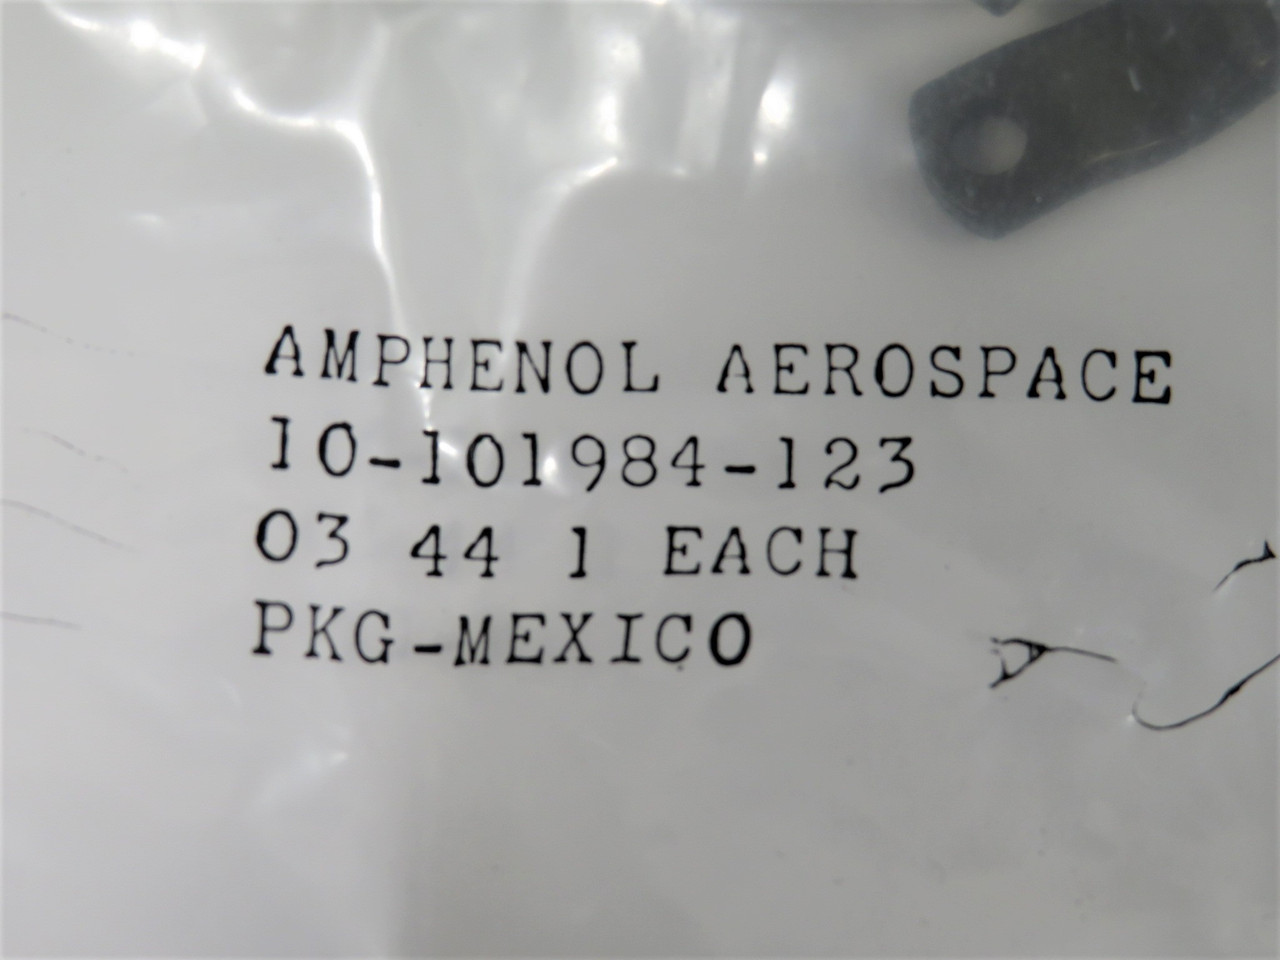 Amphenol 10-101984-123 Circular Connector Clamp *Bag May Be Resealed* NWB